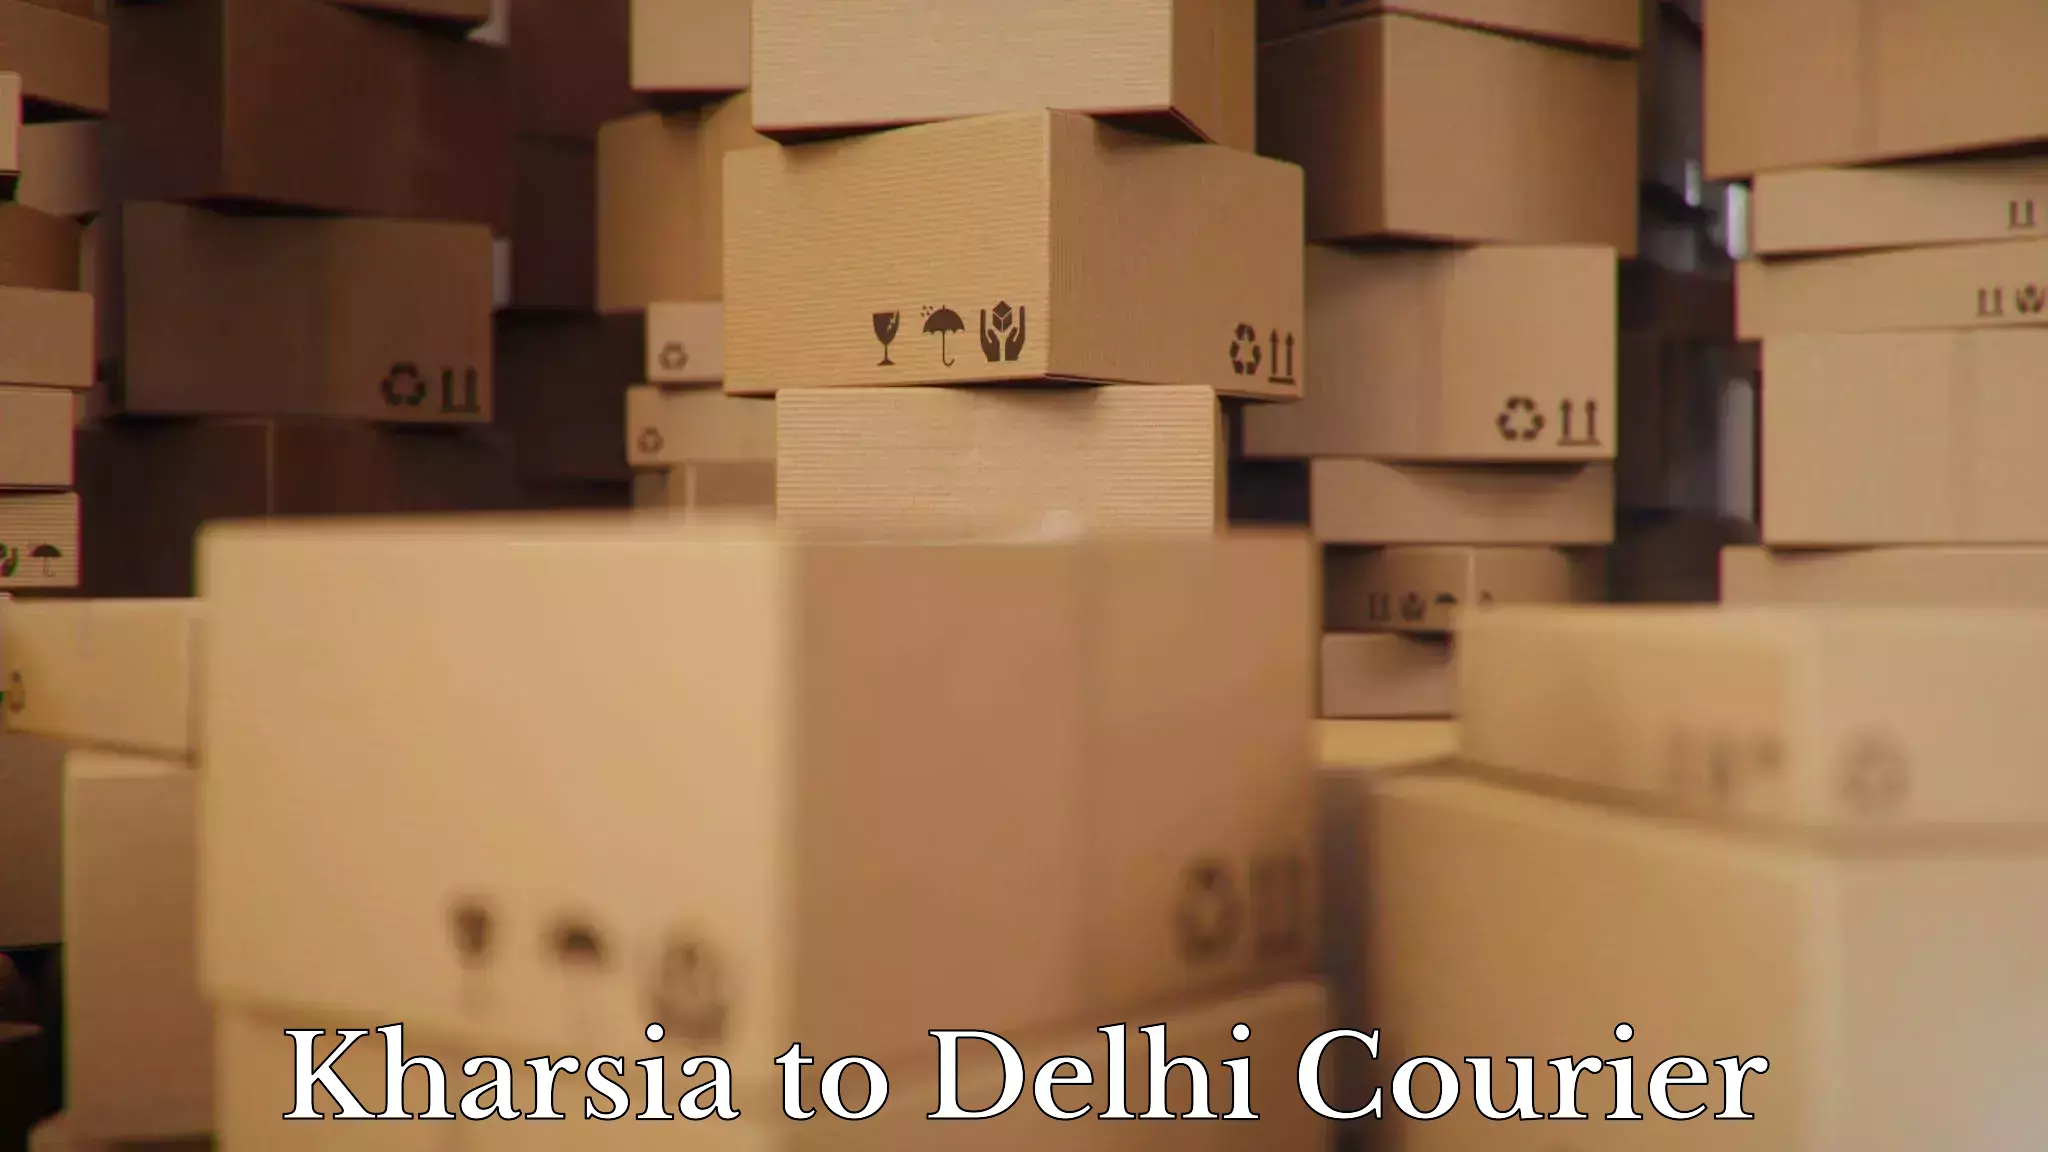 Furniture relocation services Kharsia to Delhi